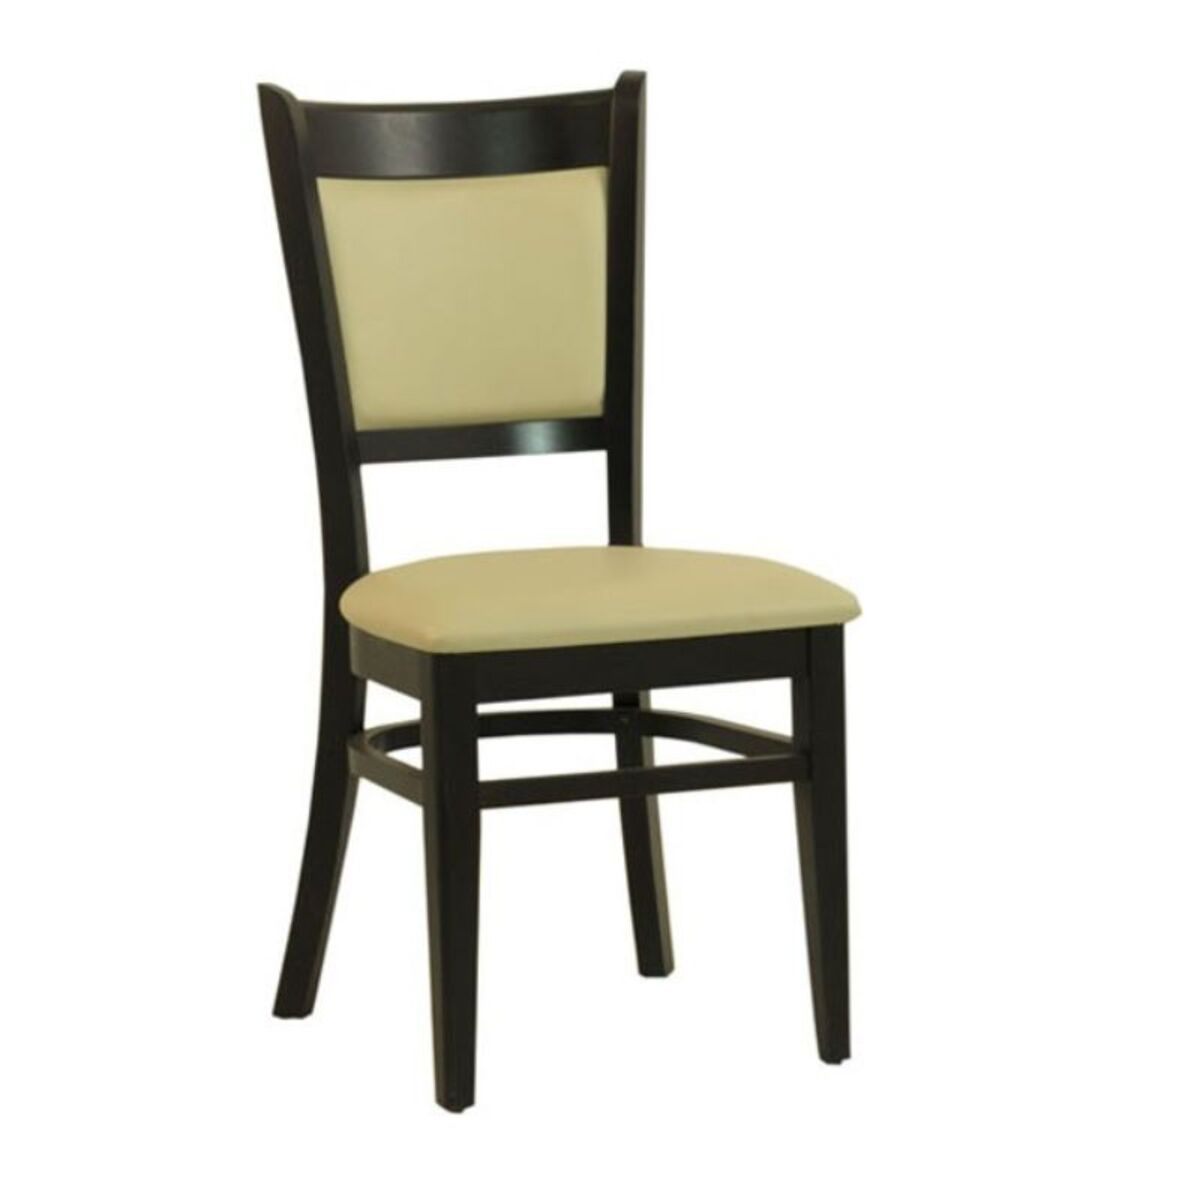 Chaise en bois avec assise et dossier rembourrés en simili cuir coloris beige